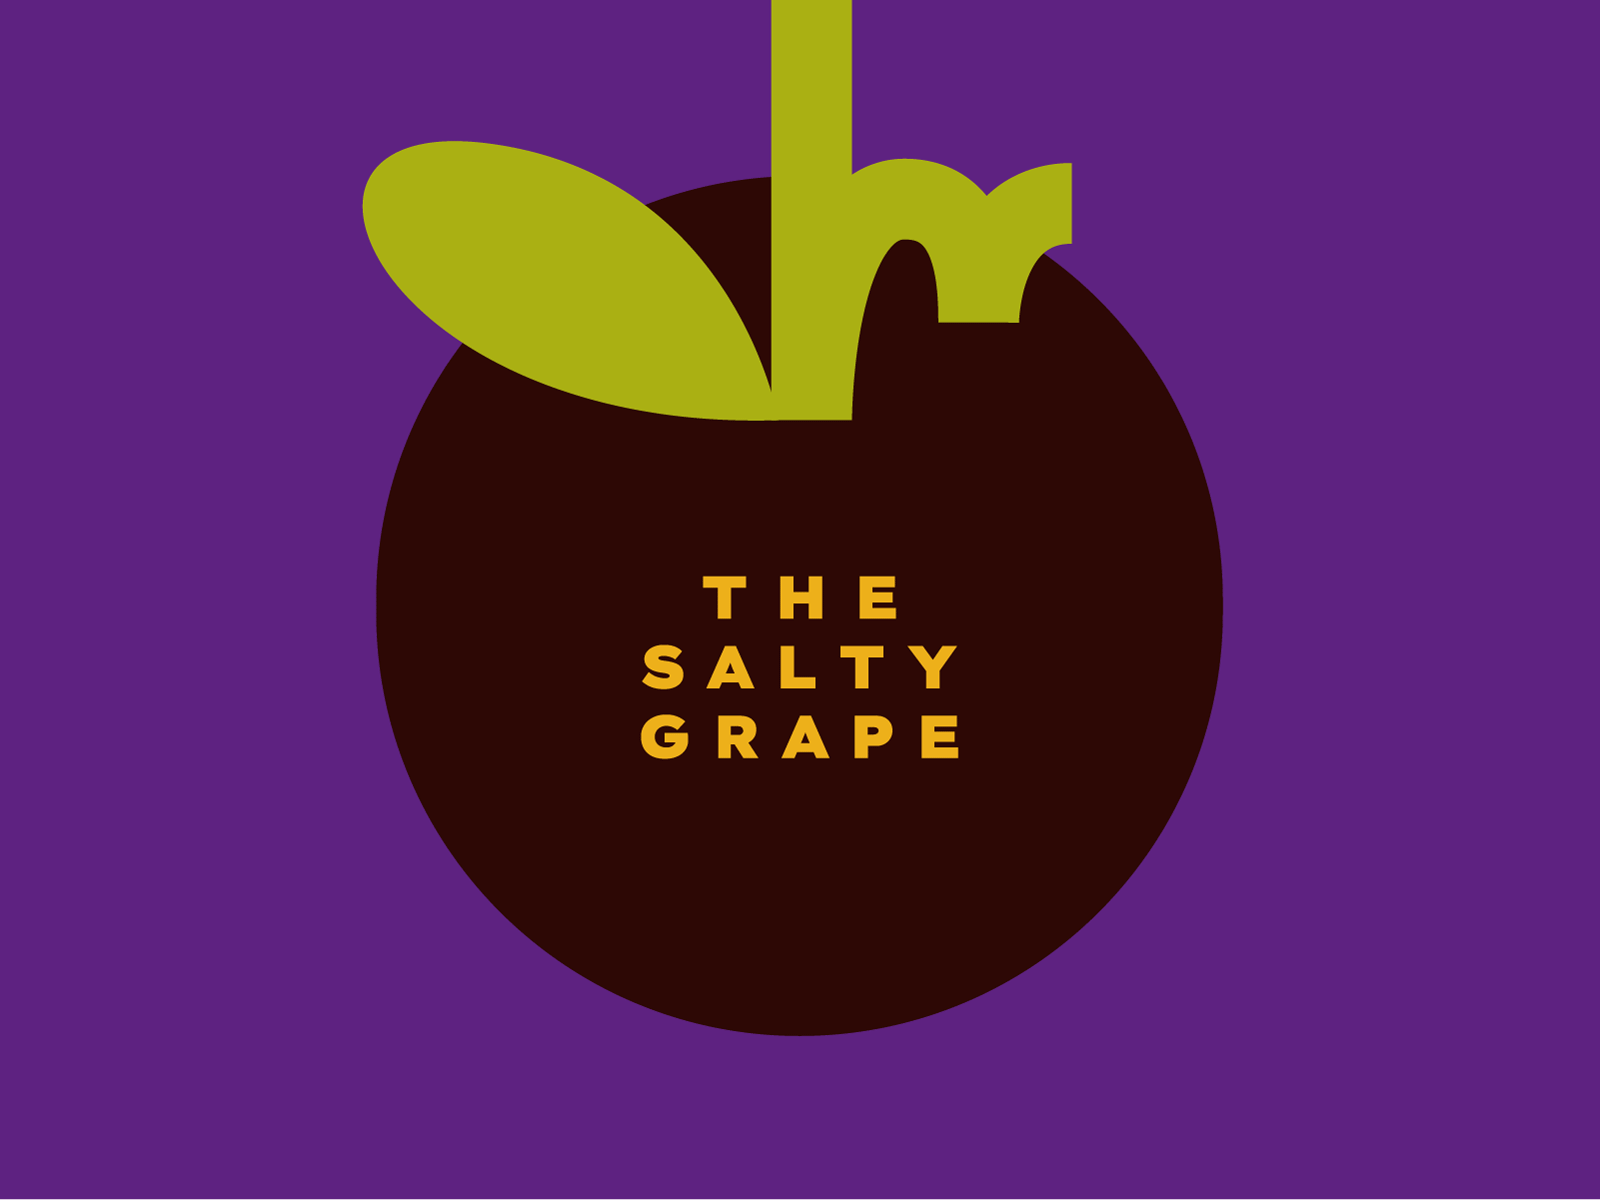 the salty grape fruit grapes logo reviews somm sommelier vineyard vino wine wine bottle winery